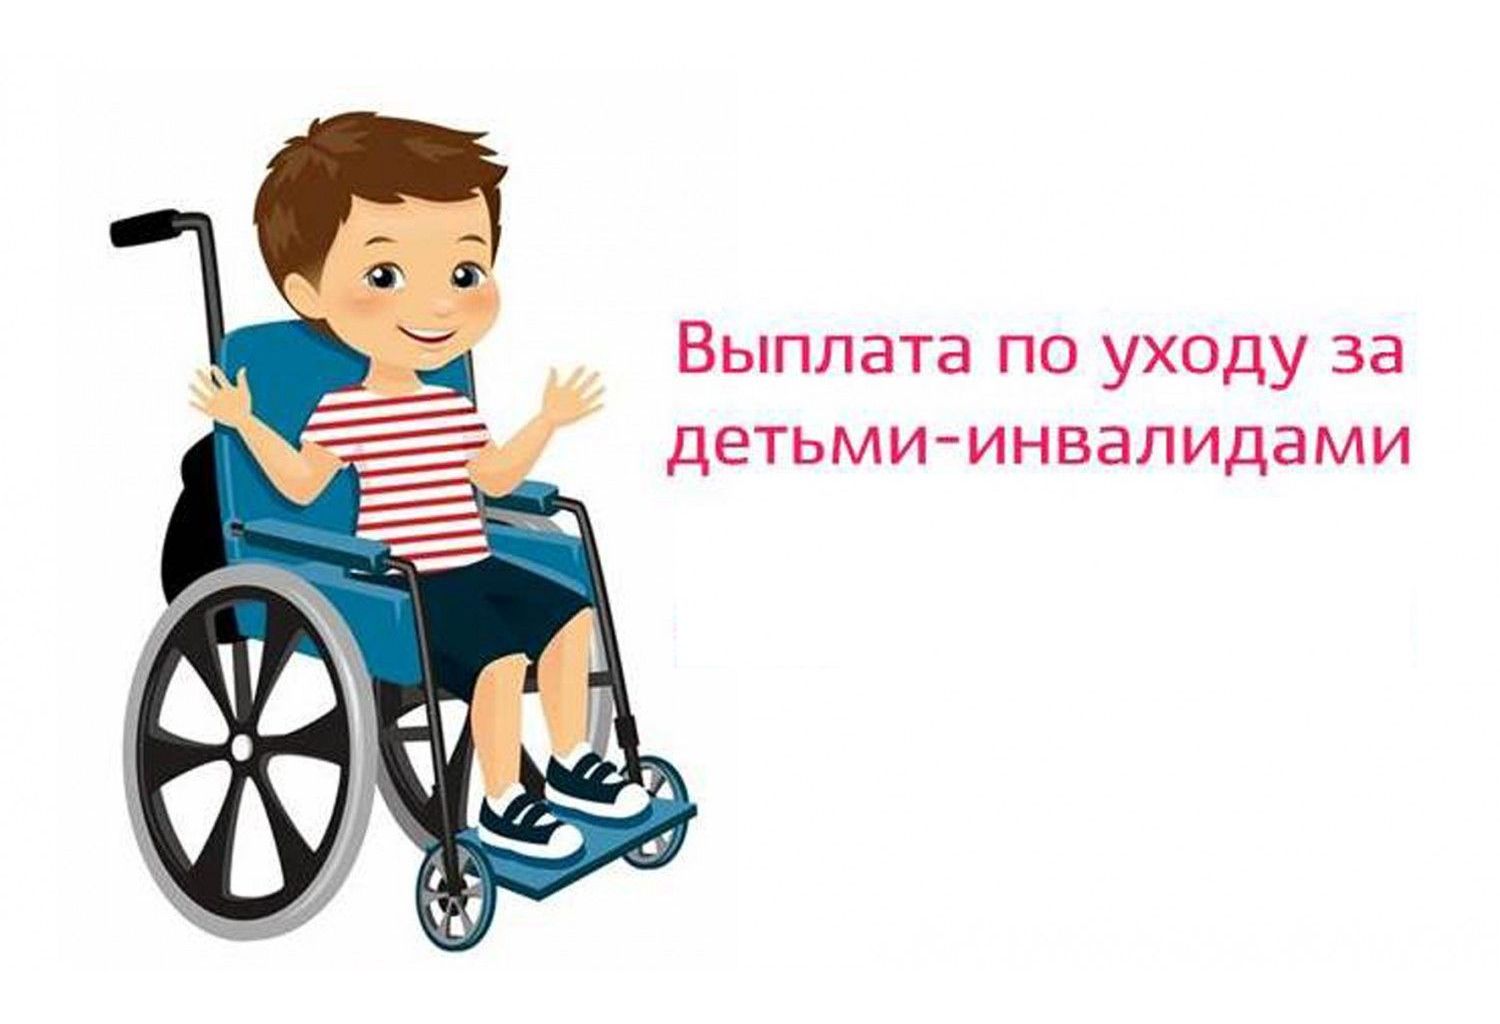 Более 1700 родителей и опекунов в Мордовии получают пособие по уходу за детьми с инвалидностью.